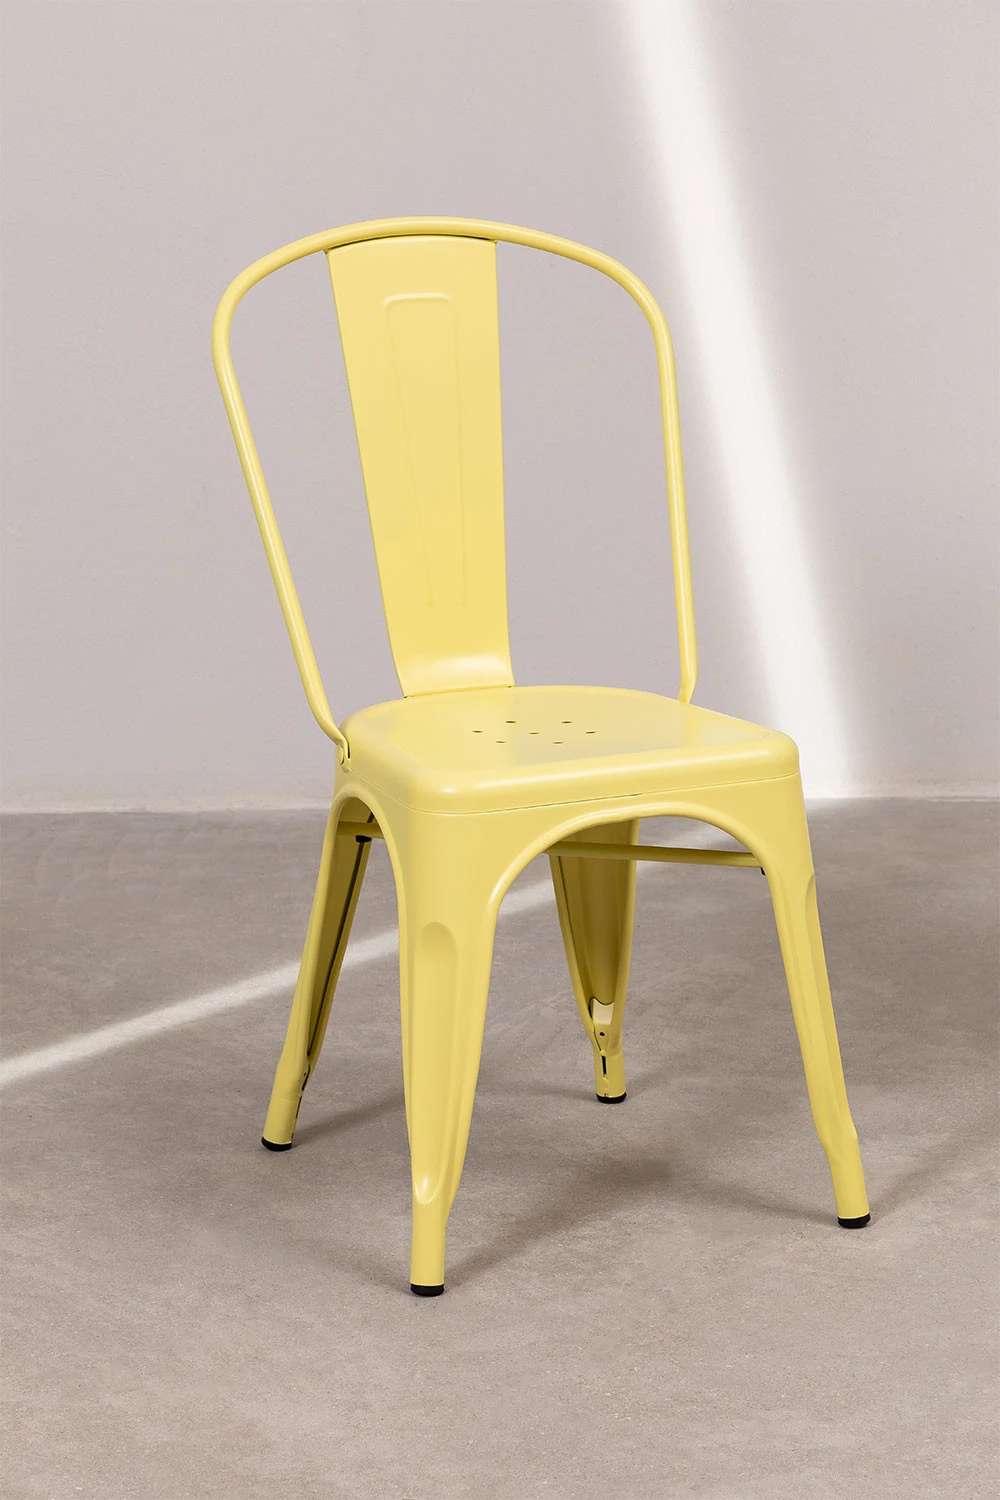 SKLUM Stuhl LIX Matt [AUßEN], stahl, vintage, industriellen stil, garten,  terrasse, küche, stapelbar, verschiedene pastell farben|Garden Chairs| -  AliExpress